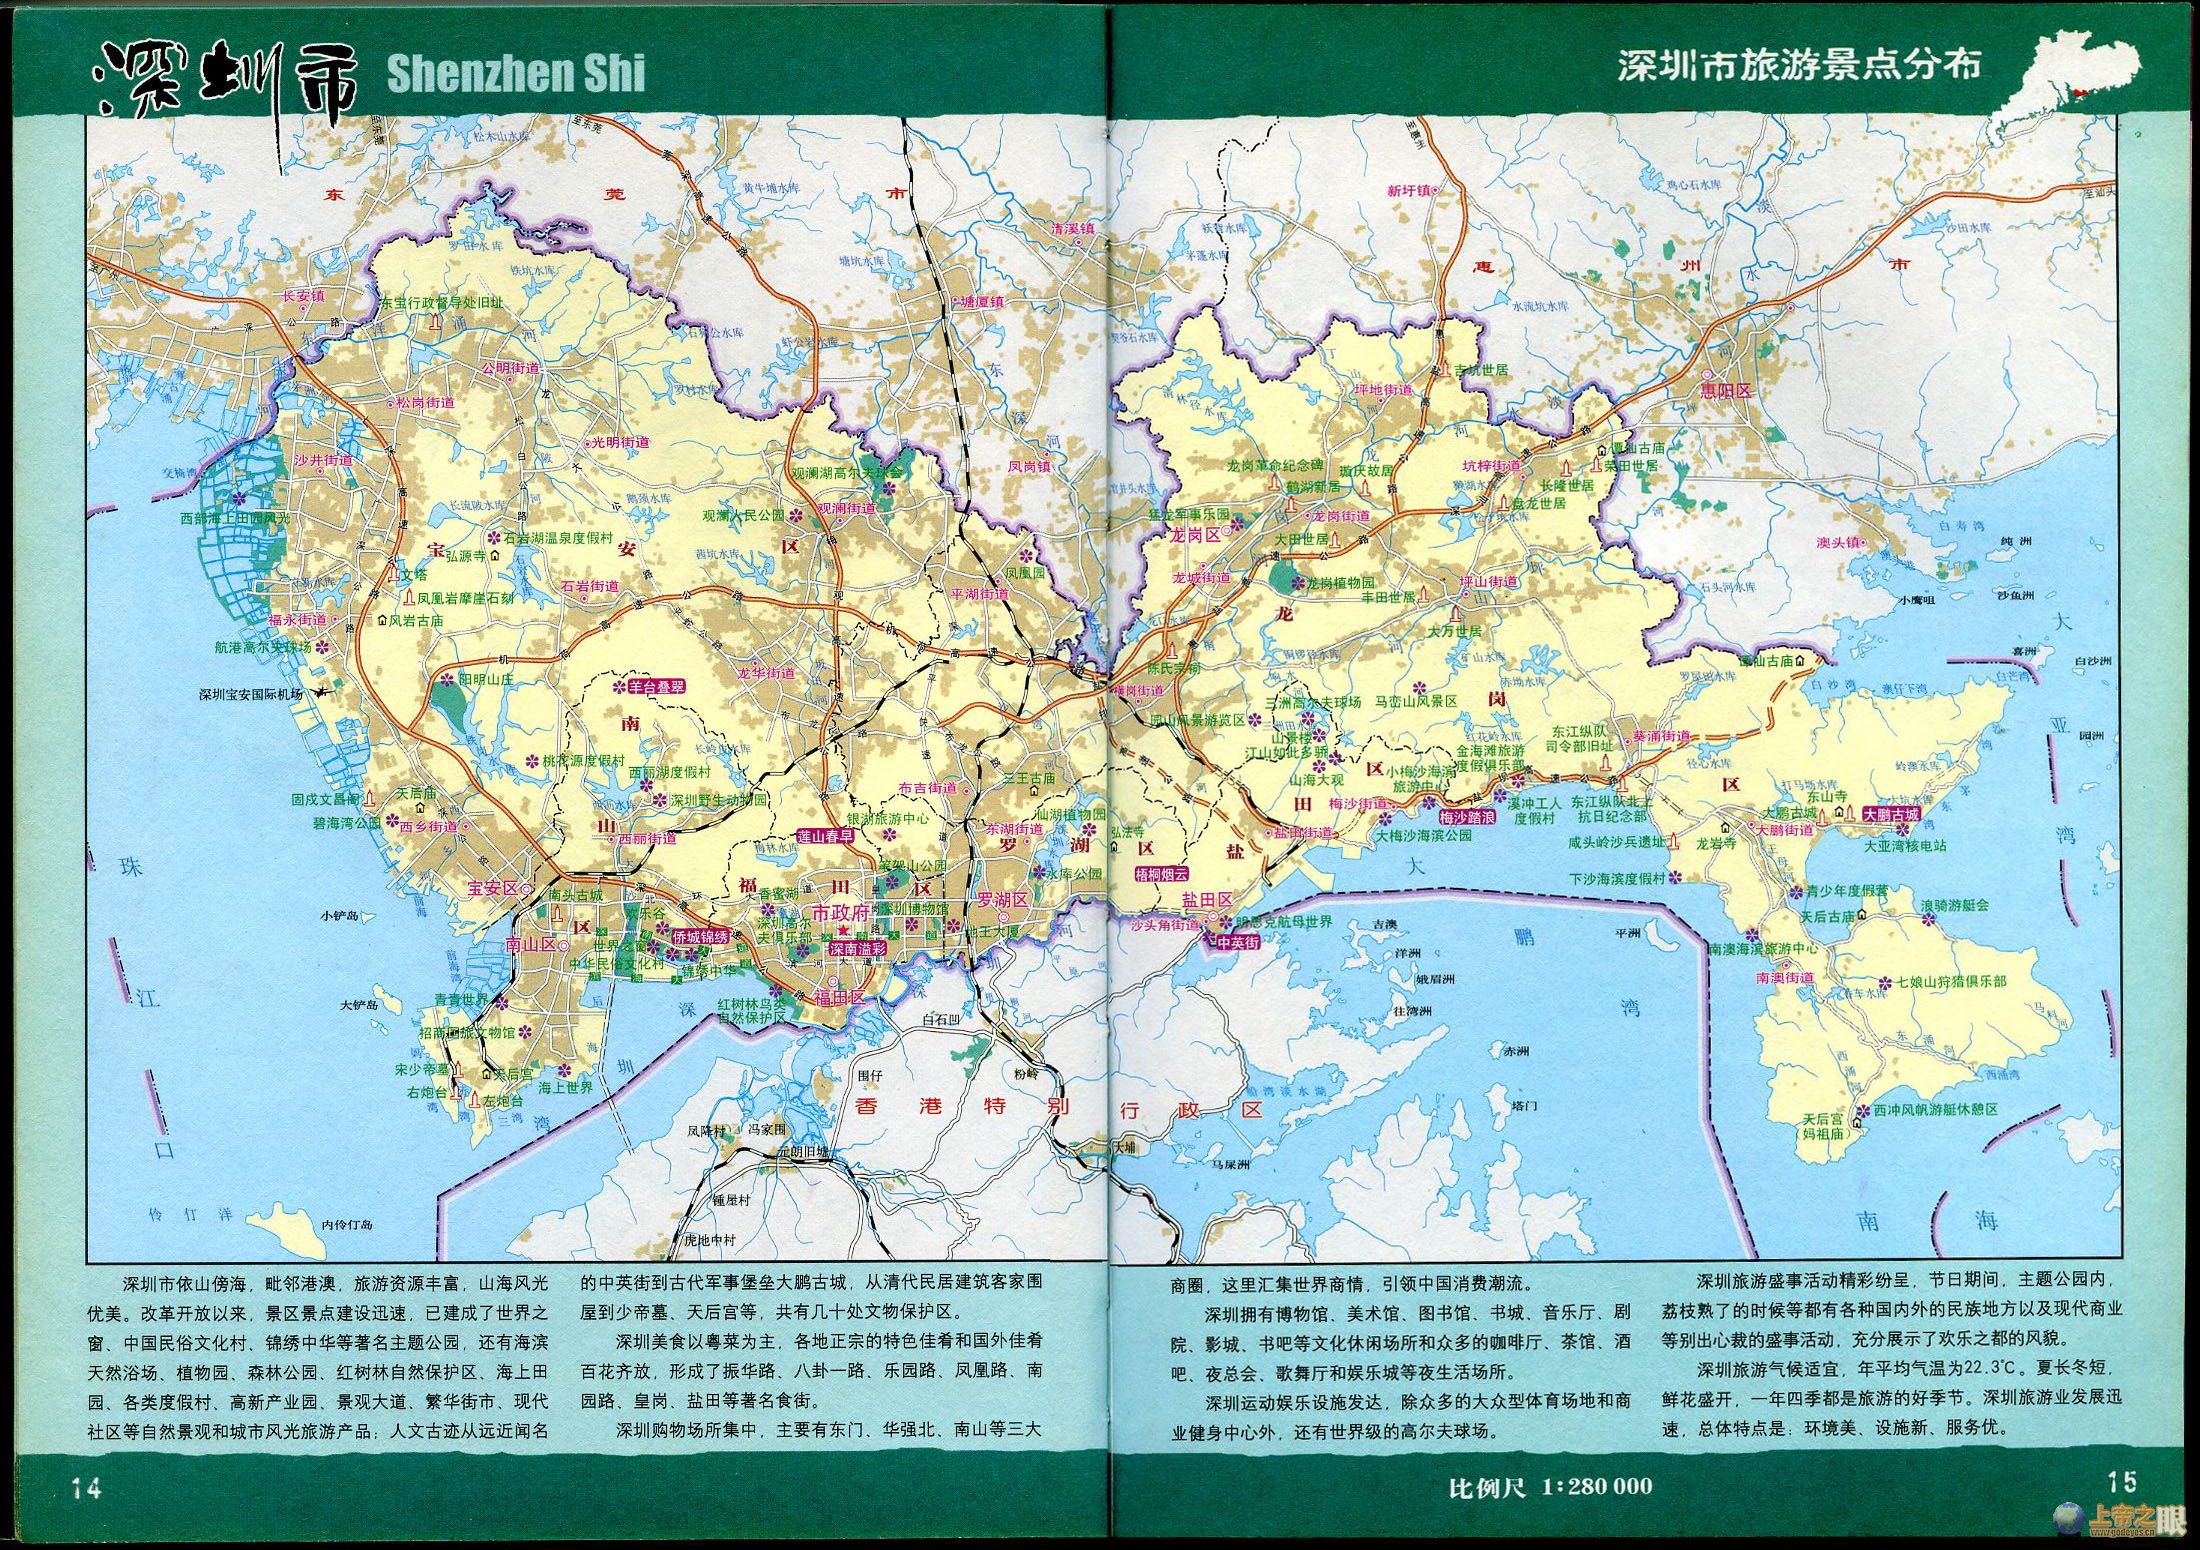 更新:2013-8-19 相关链接:广州  深圳  佛山  河源  江门  阳江图片